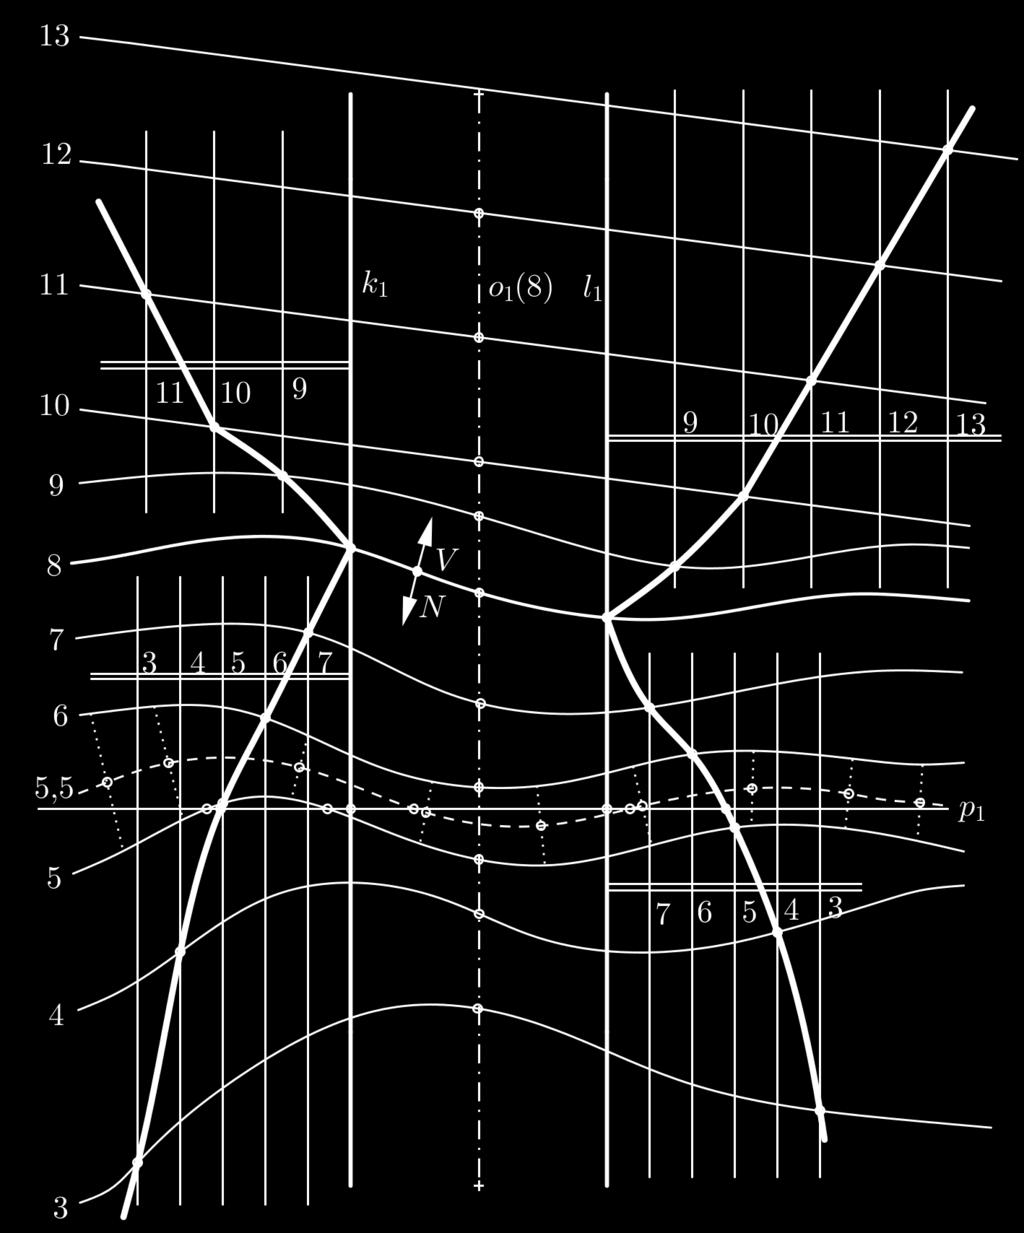 Obrázek 13: Spojení cesty s terénem Řešení Vodorovná cesta ve výšce 8 je zadaná niveletou o 1 a korunními hranami k 1 a l 1.